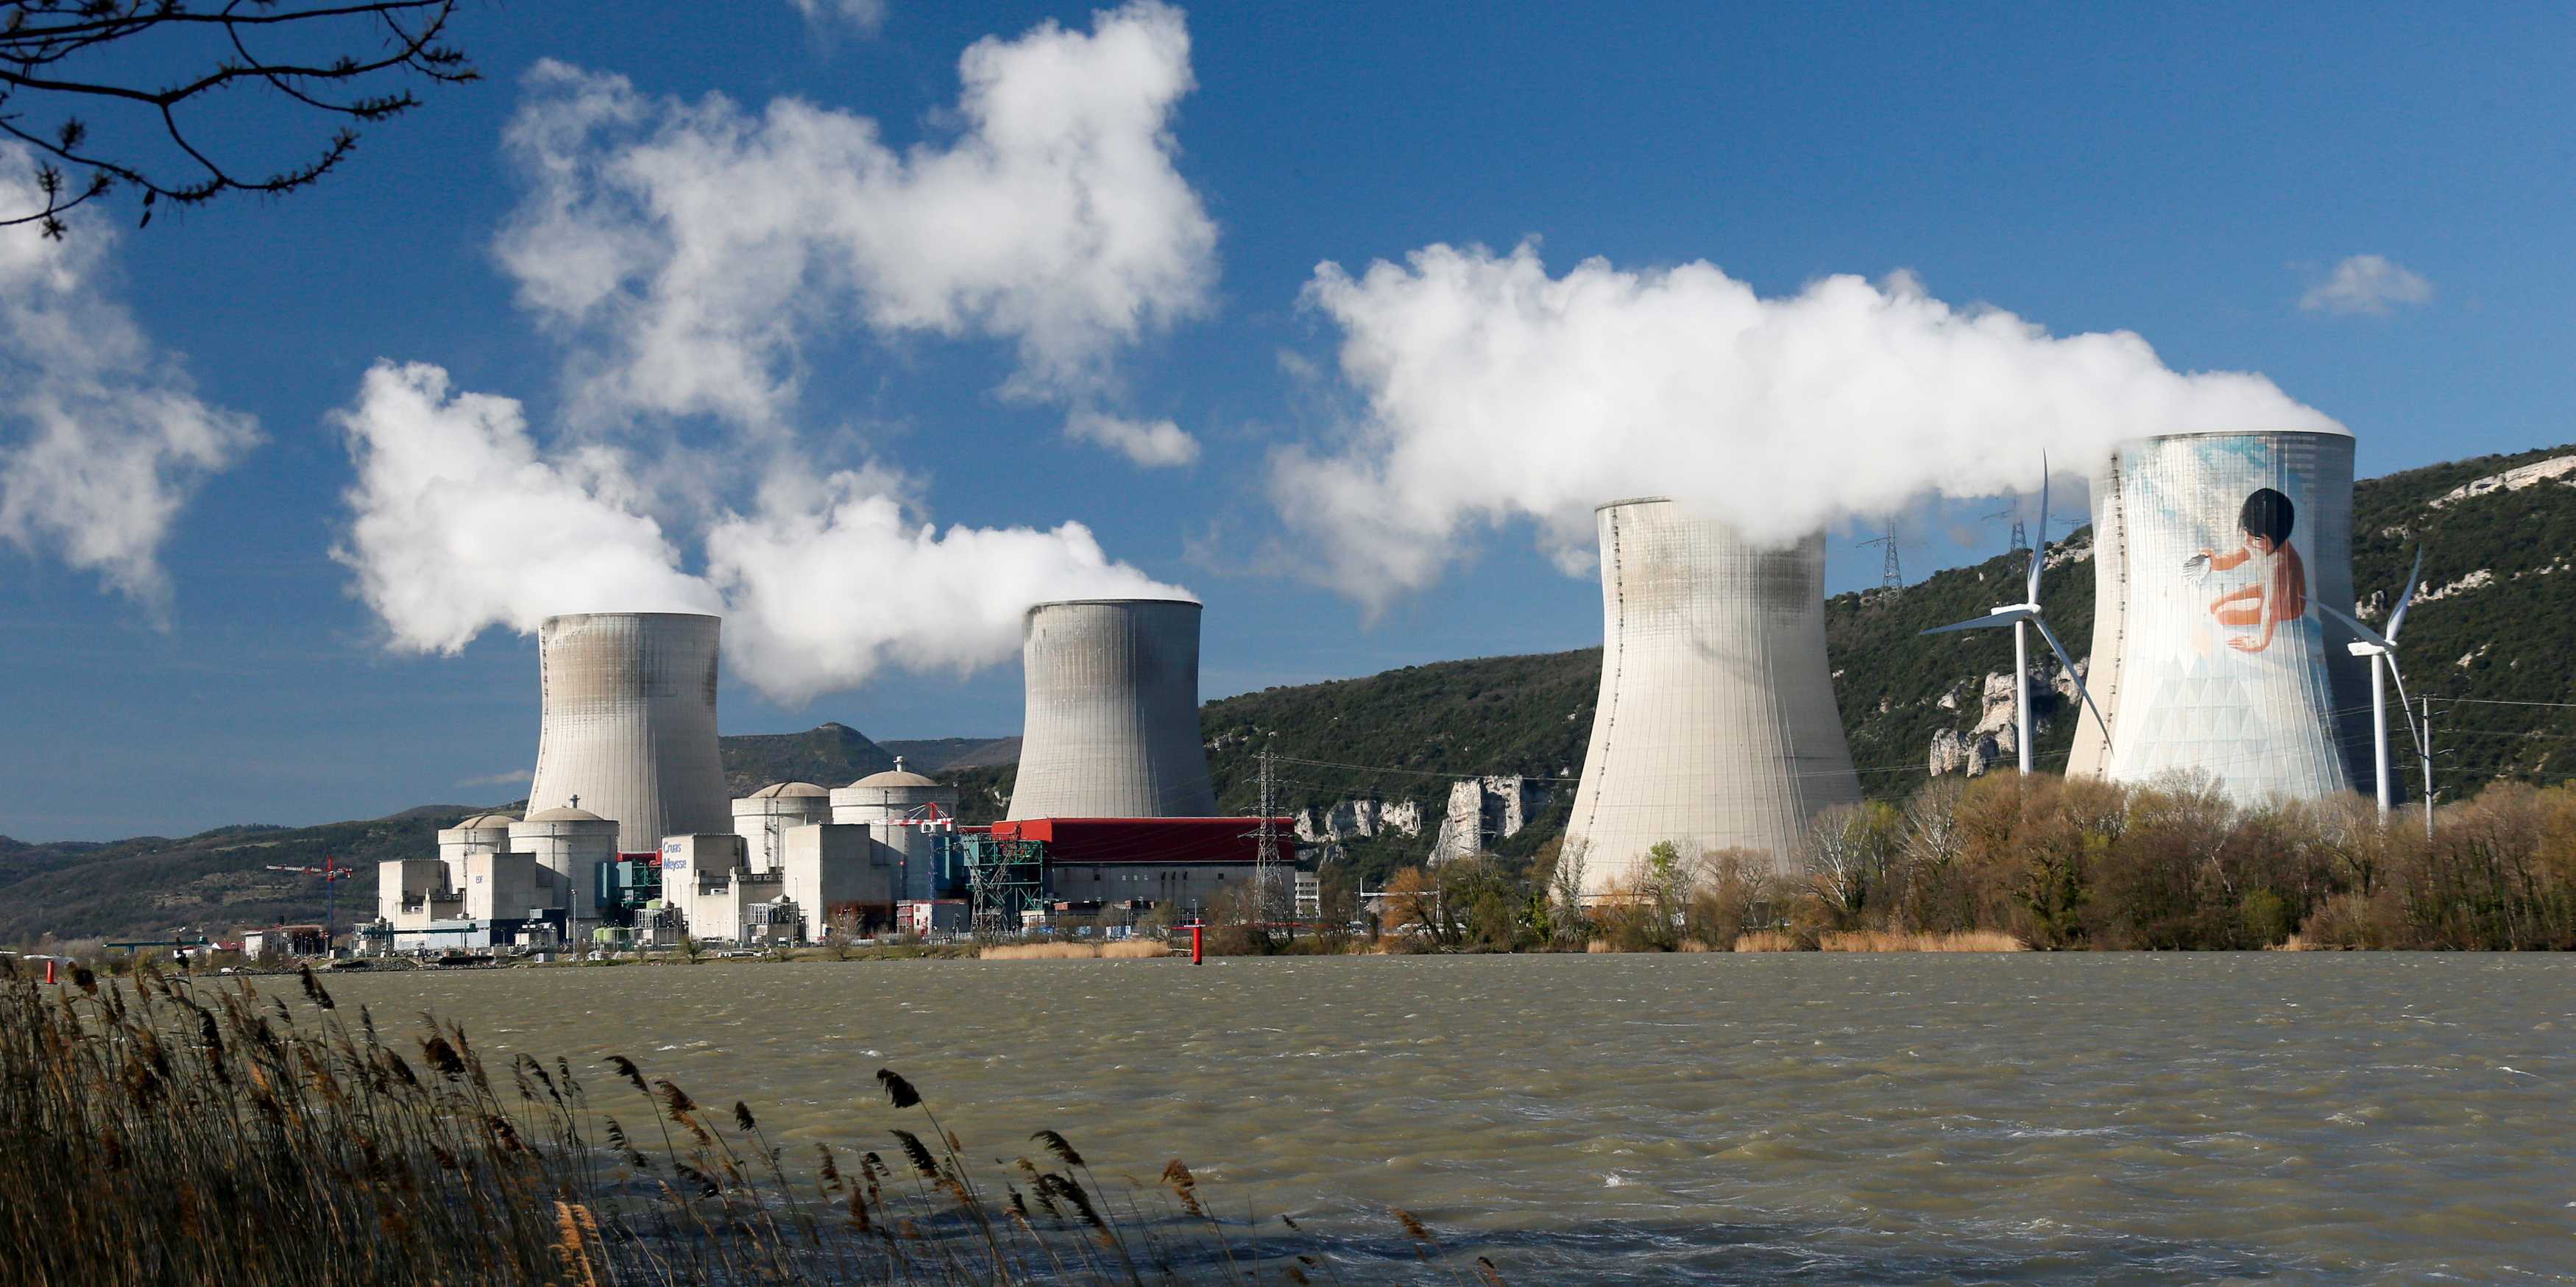 Nucléaire ou 100% renouvelable après 2035? Barbara Pompili veut préparer la France à faire un choix